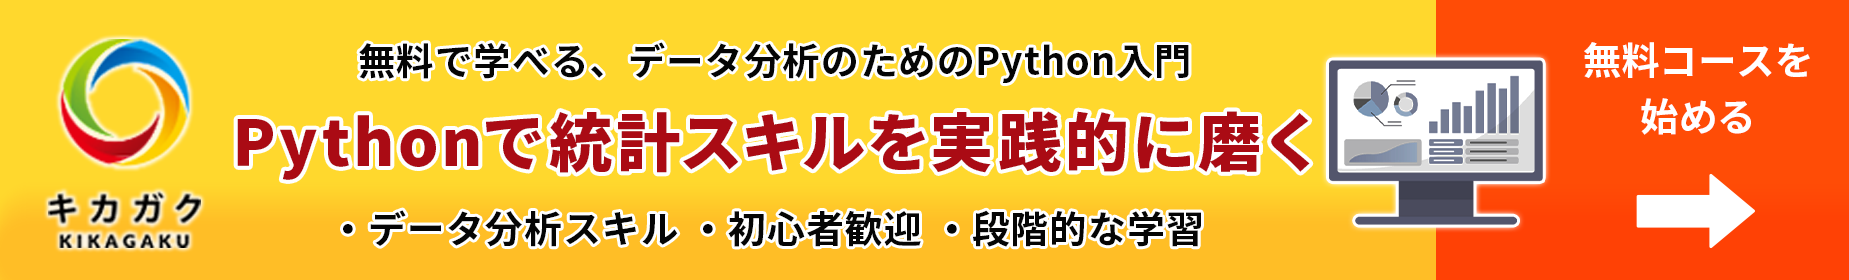 無料登録してPythonを学ぶ